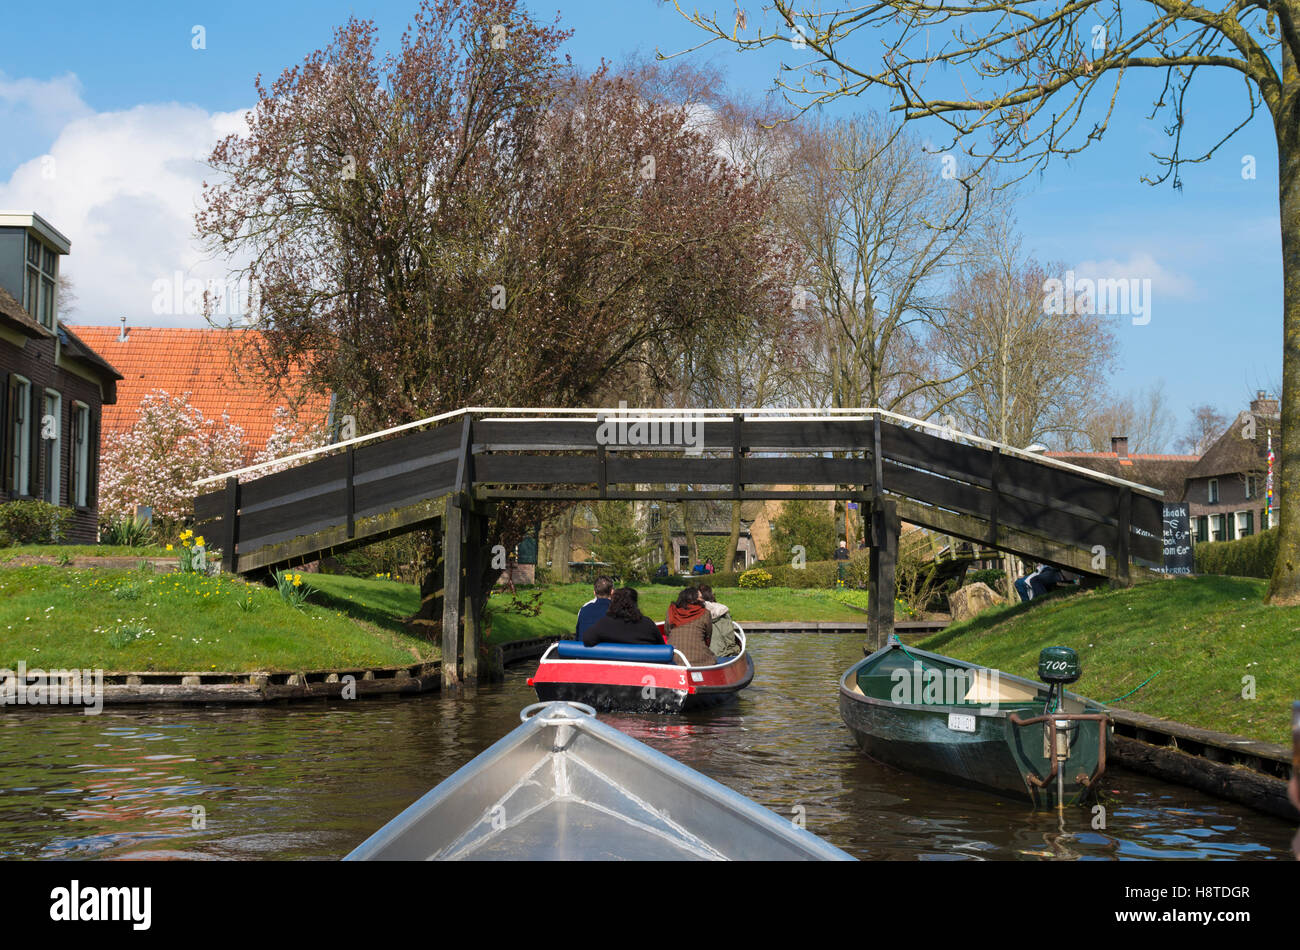 GIETHOORN, Niederlande - 3. April 2016: Unbekannte Menschen in Booten genießen ihre Sightseeing-Bootsfahrt in einem Kanal in Giethoorn, al Stockfoto